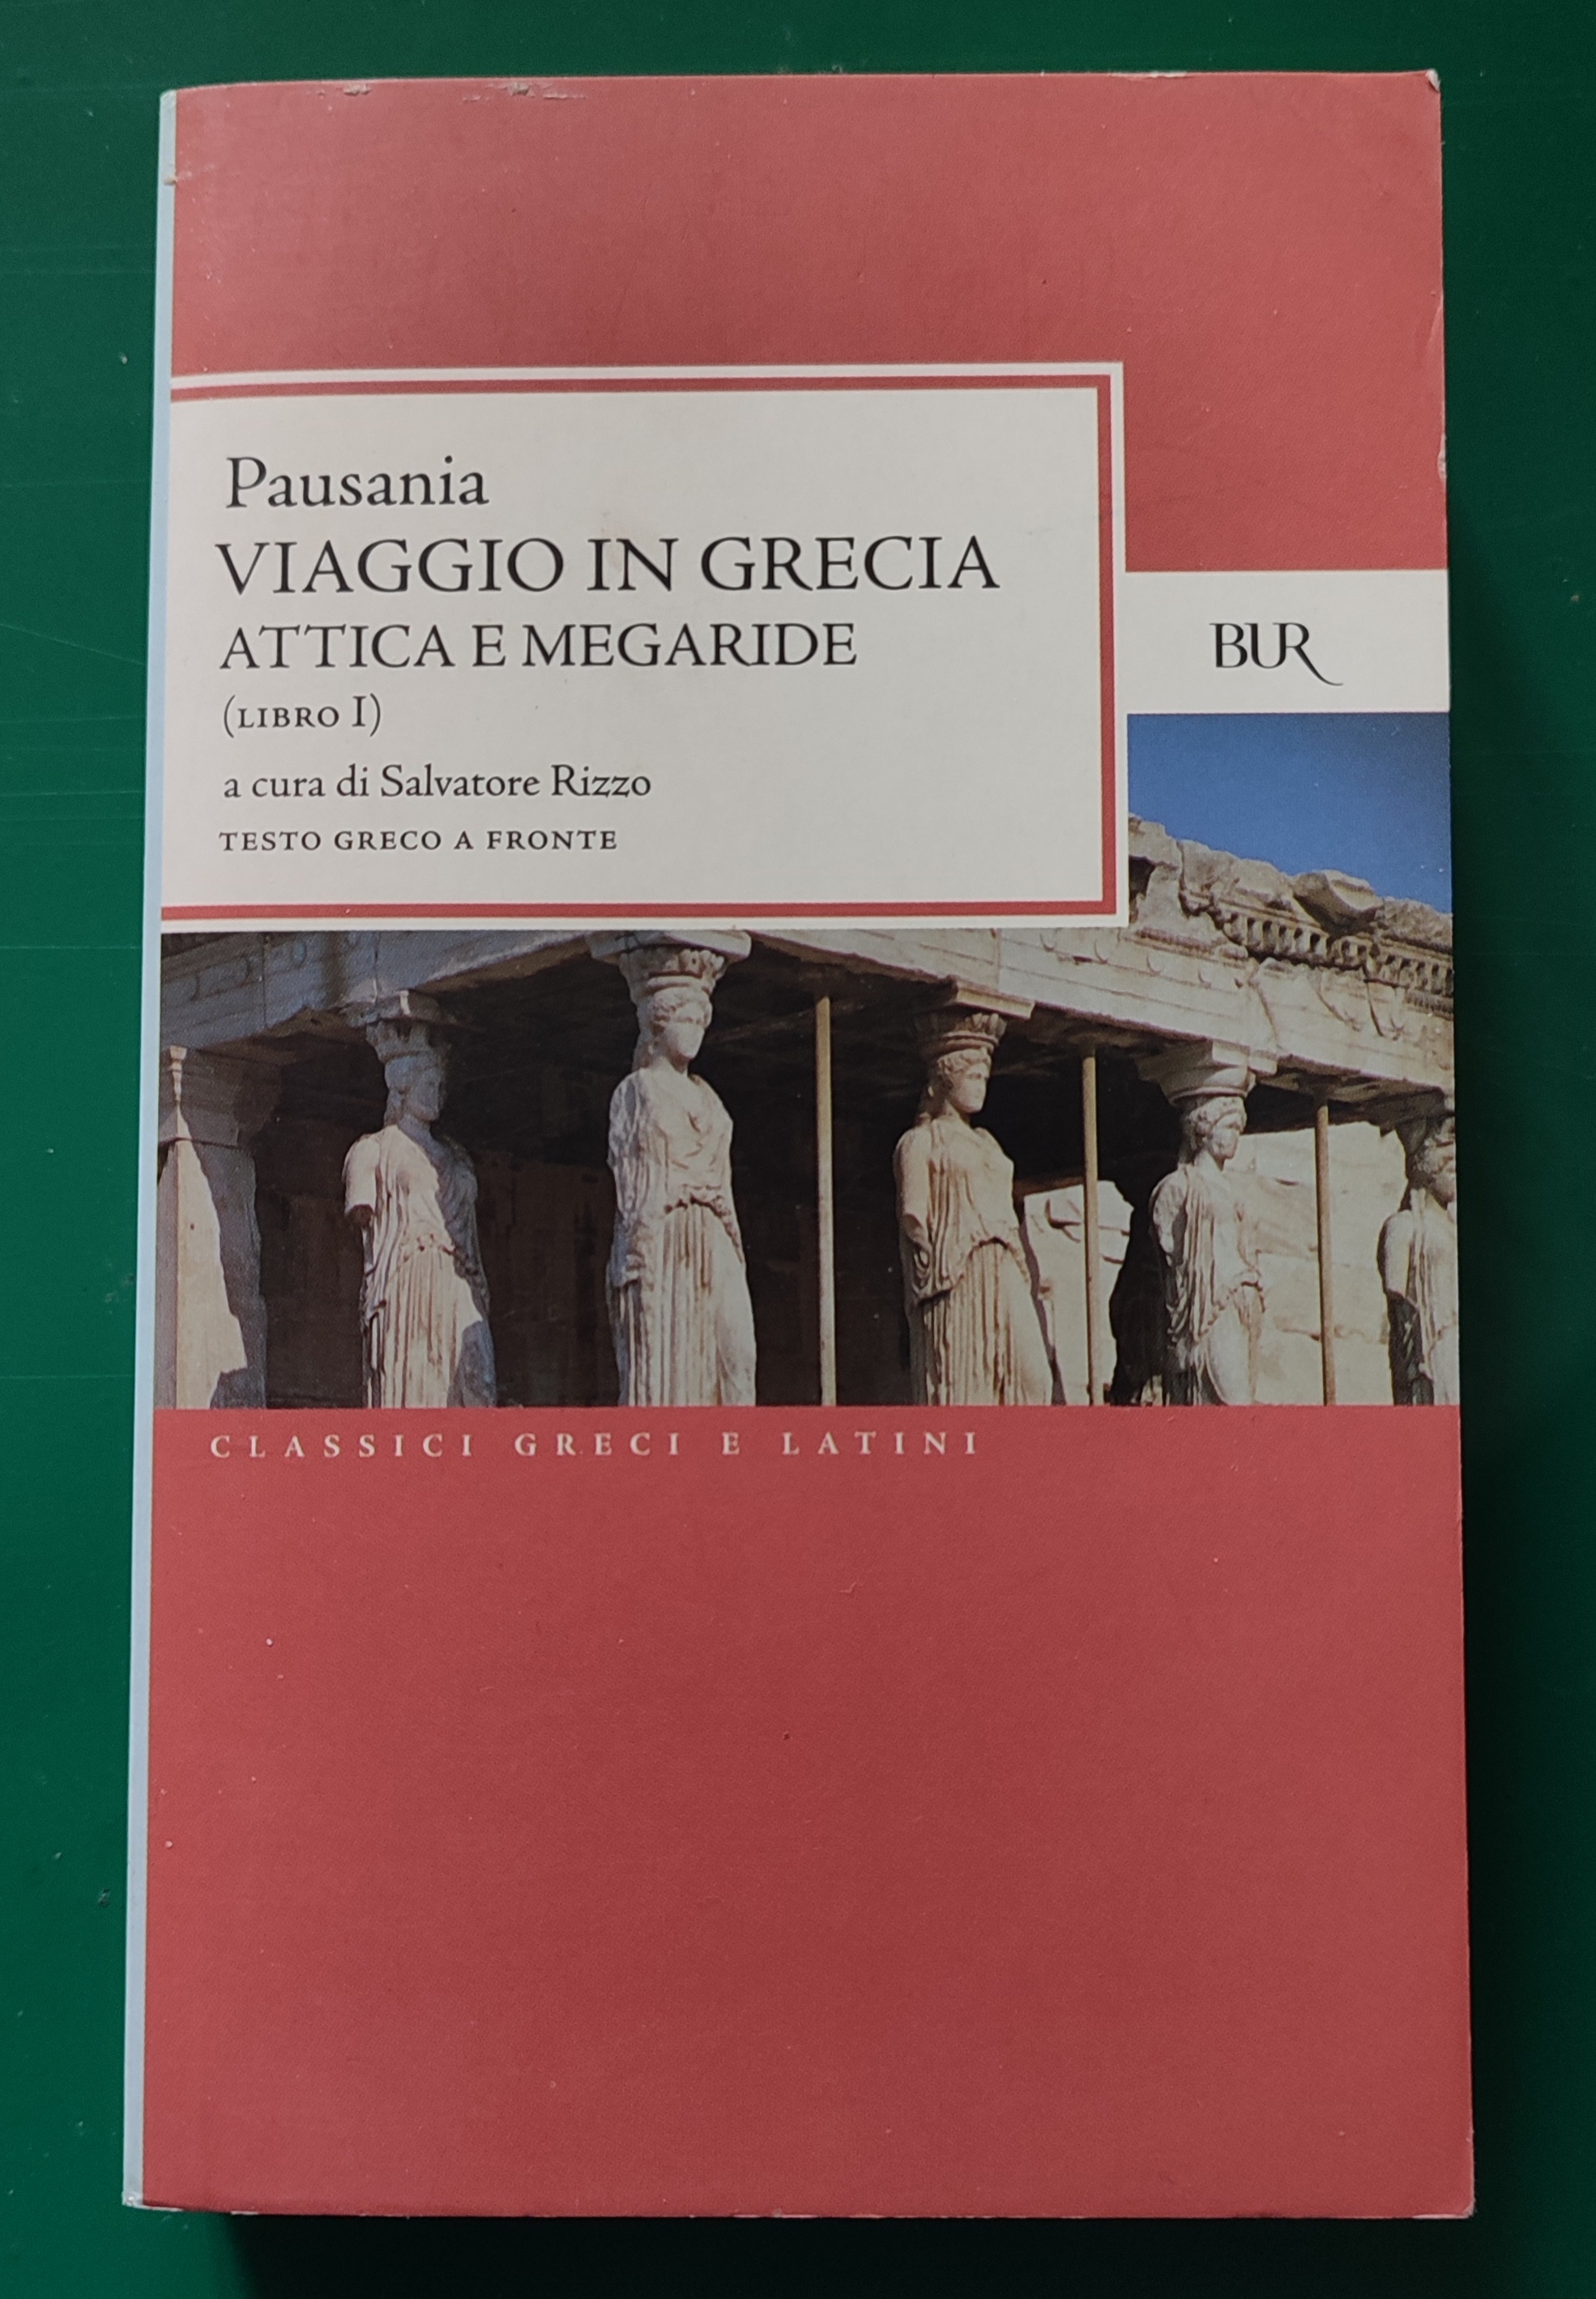 Viaggio in Grecia. Guida antiquaria e artistica. Testo greco a fronte. Vol. 1: Attica e Megaride